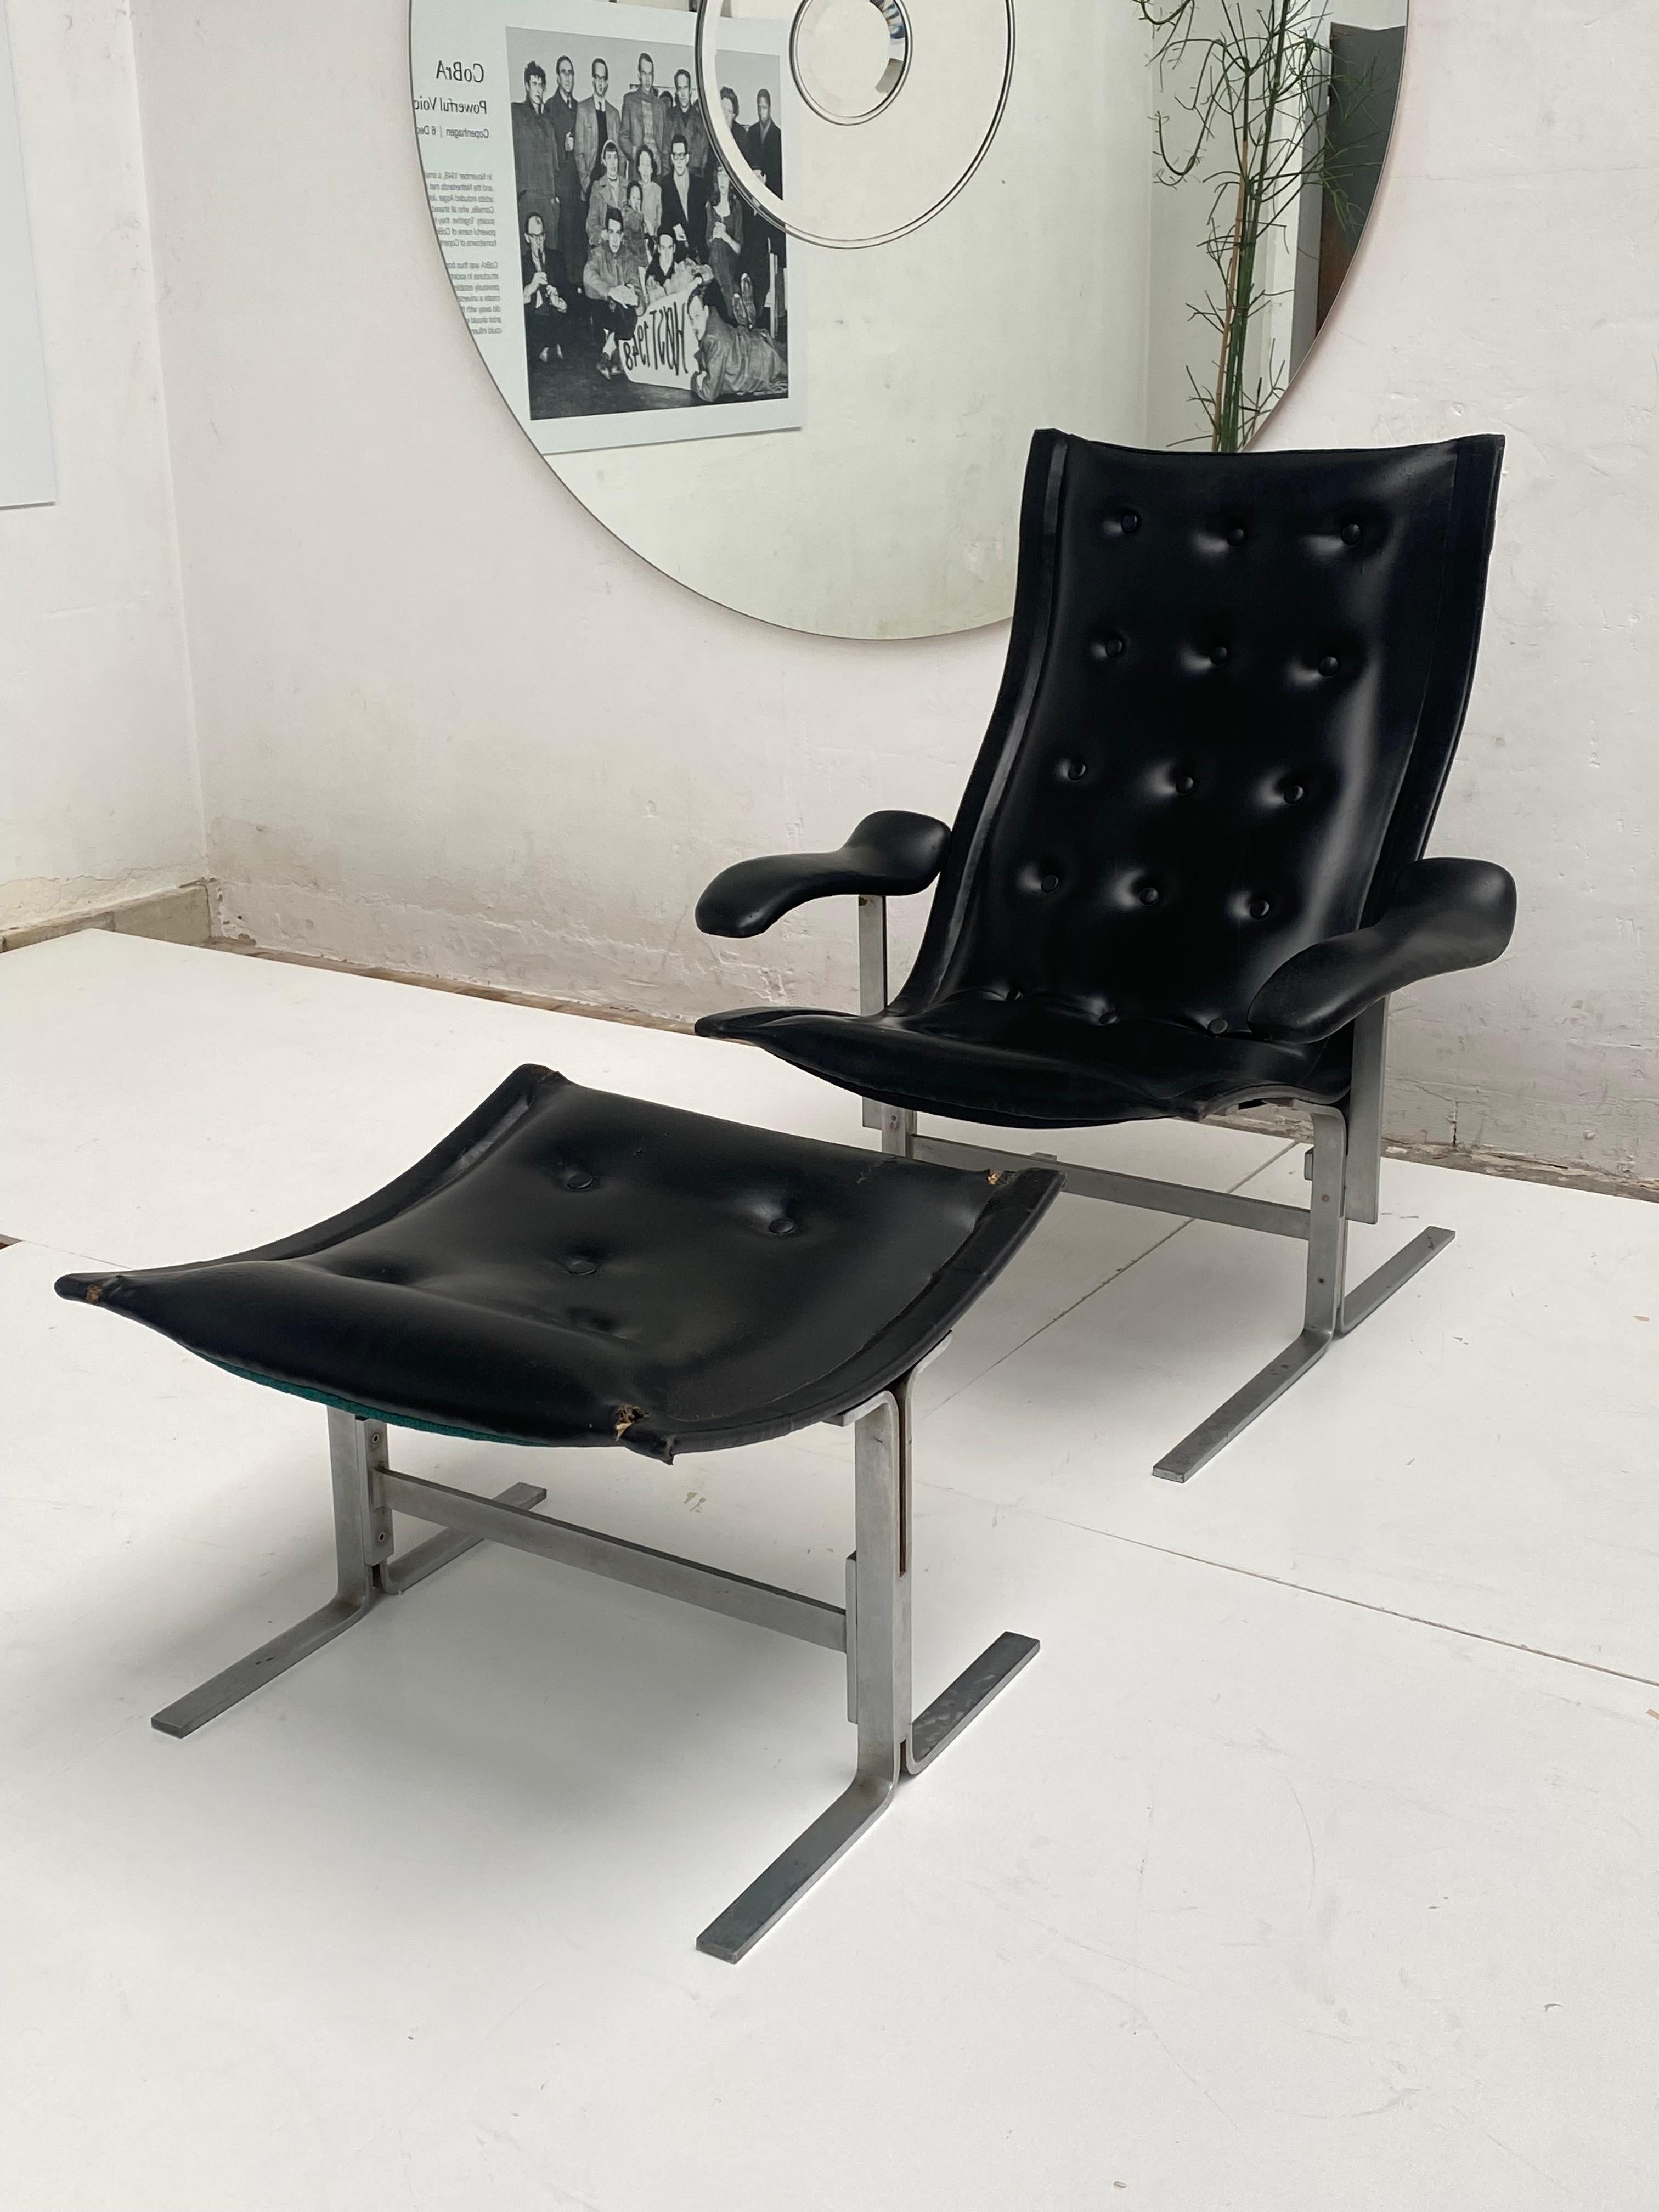 Super rare ensemble chaise longue et ottoman élégants  à partir d'un produit artisanal  édition de deux séries seulement  qui ont été conçues  par Franco Campo en 1960 pour sa famille et un ami proche, la chaise longue et l'ottomane  sont tous deux 